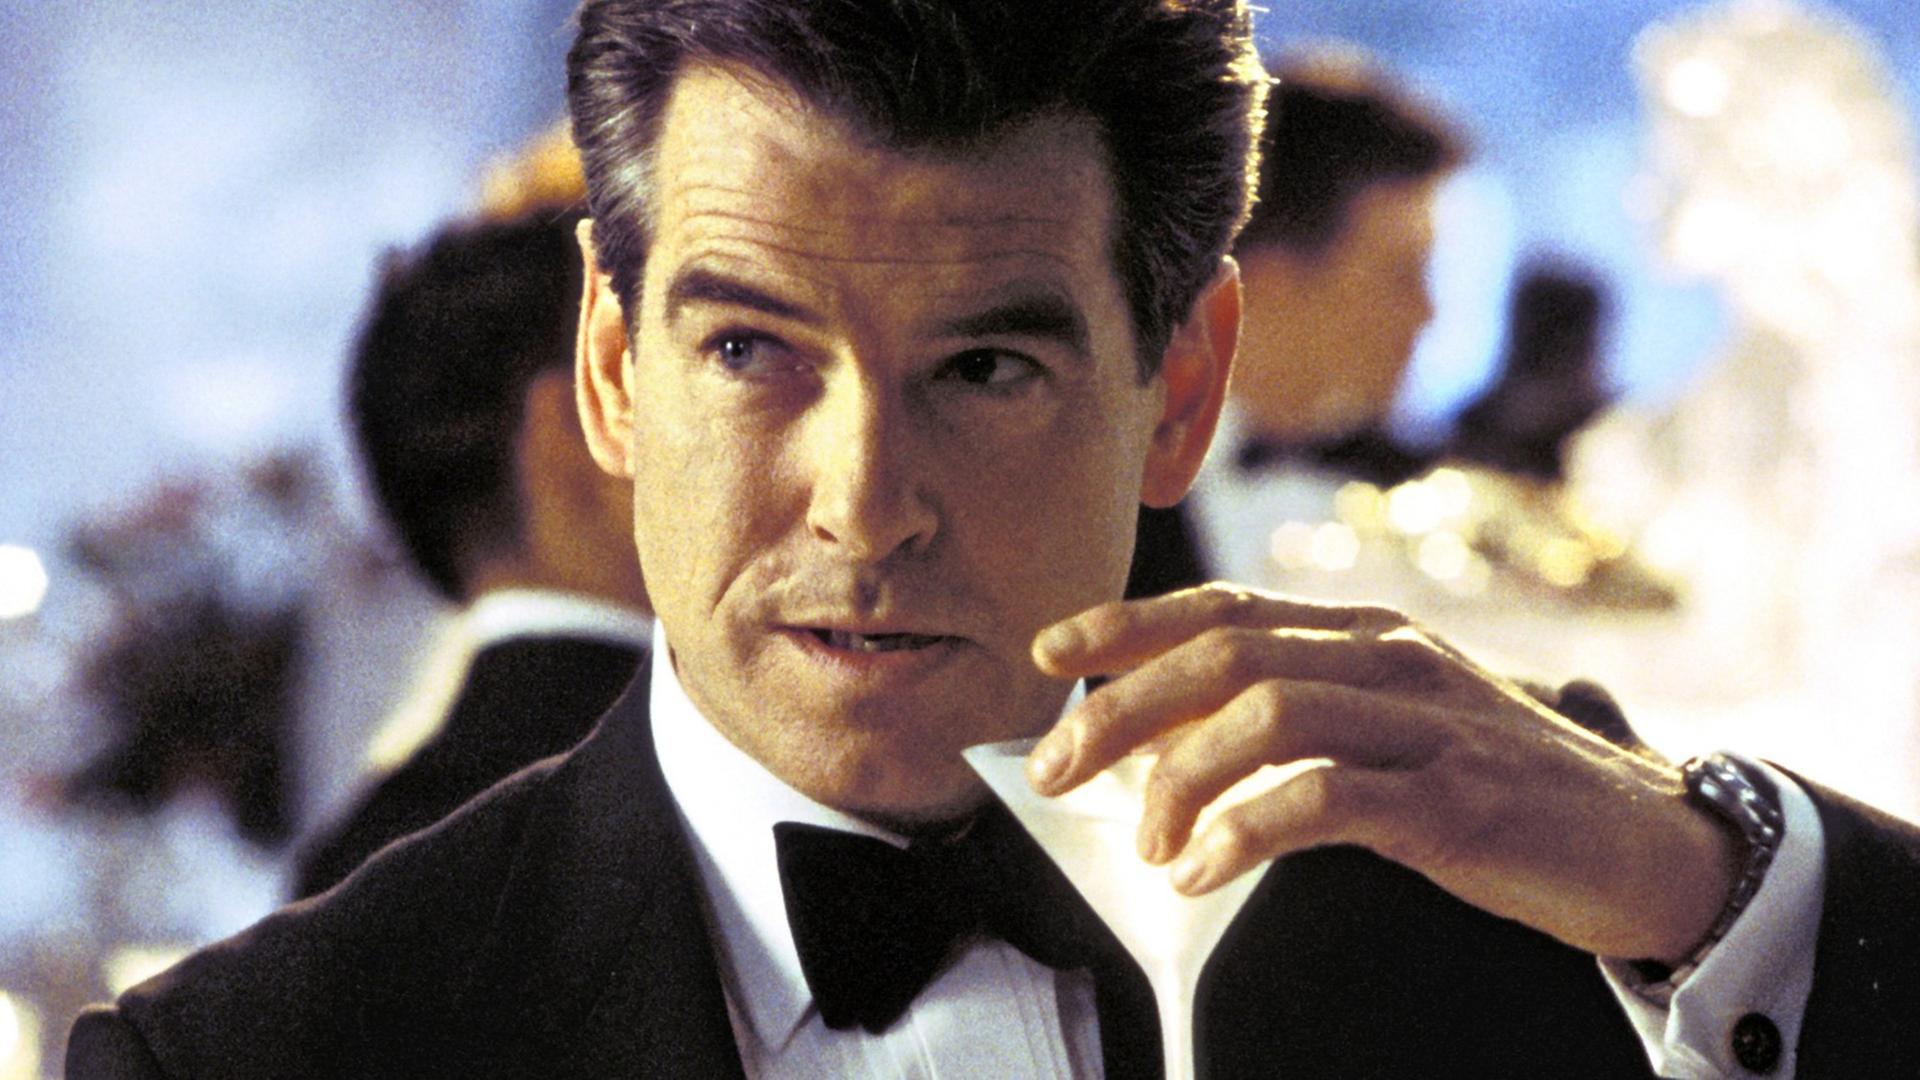 "Geschüttelt, nicht gerührt": James Bond (Pierce Brosnan) trinkt im neuen Kinofilm "James Bond 007 - Stirb an einem anderen Tag" einen Martini